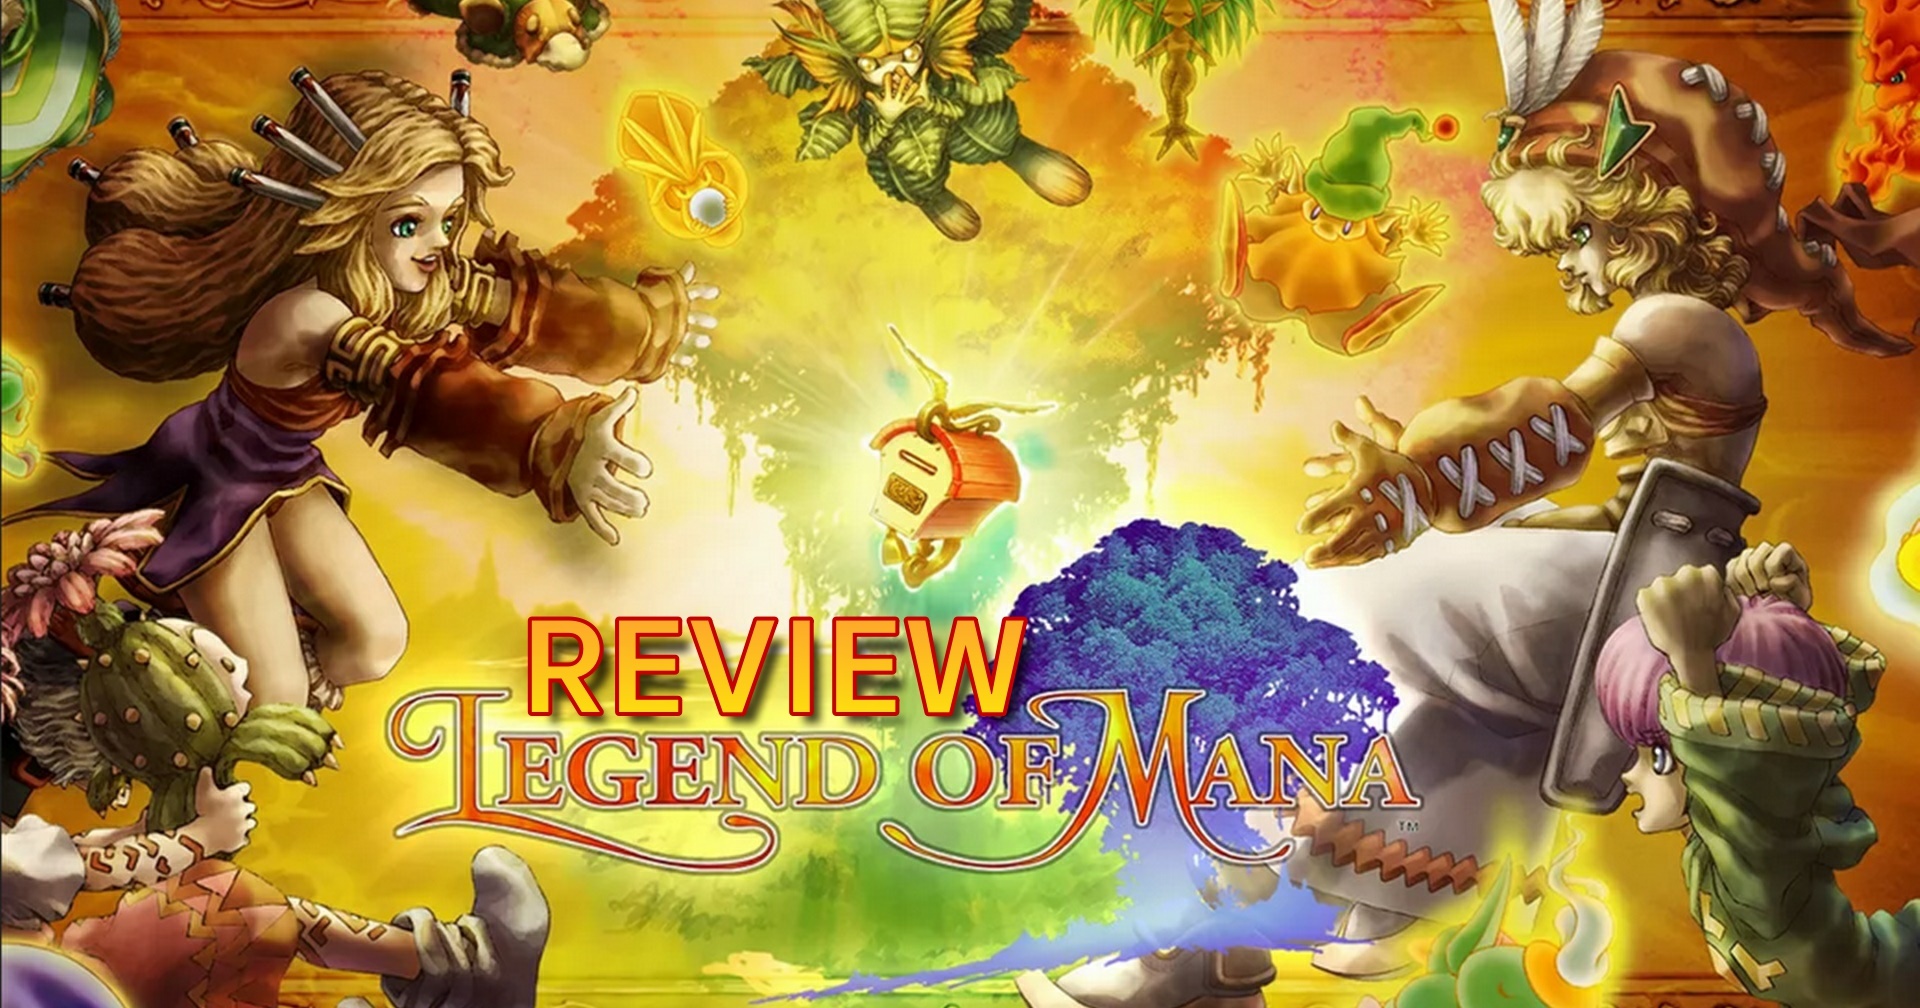 รีวิวเกม Legend of Mana ตำนานแอ็กชัน RPG กลับมาแบบรีมาสเตอร์กราฟิก